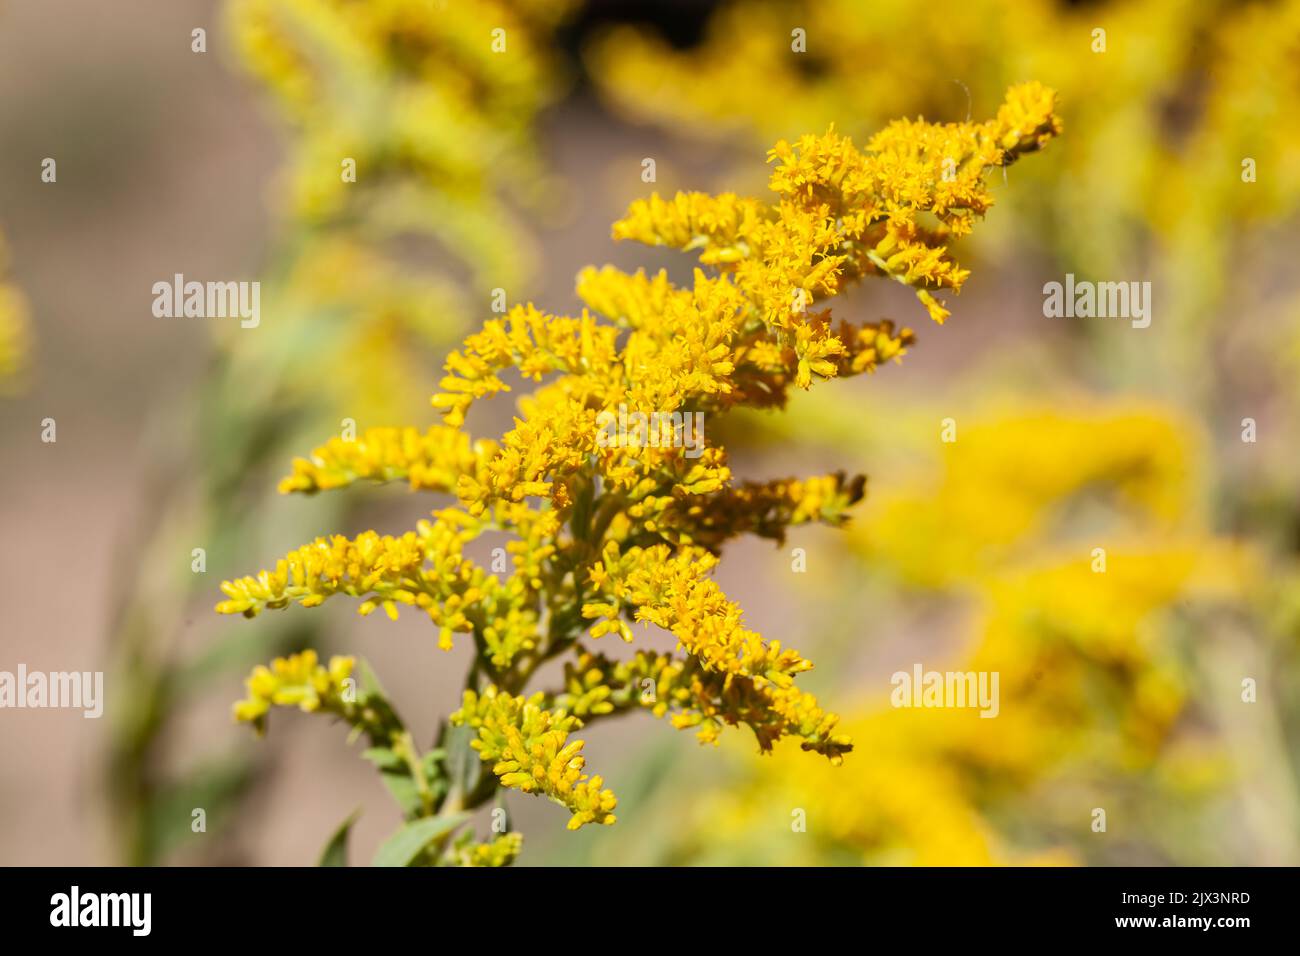 Goldenrod flower. Stock Photo